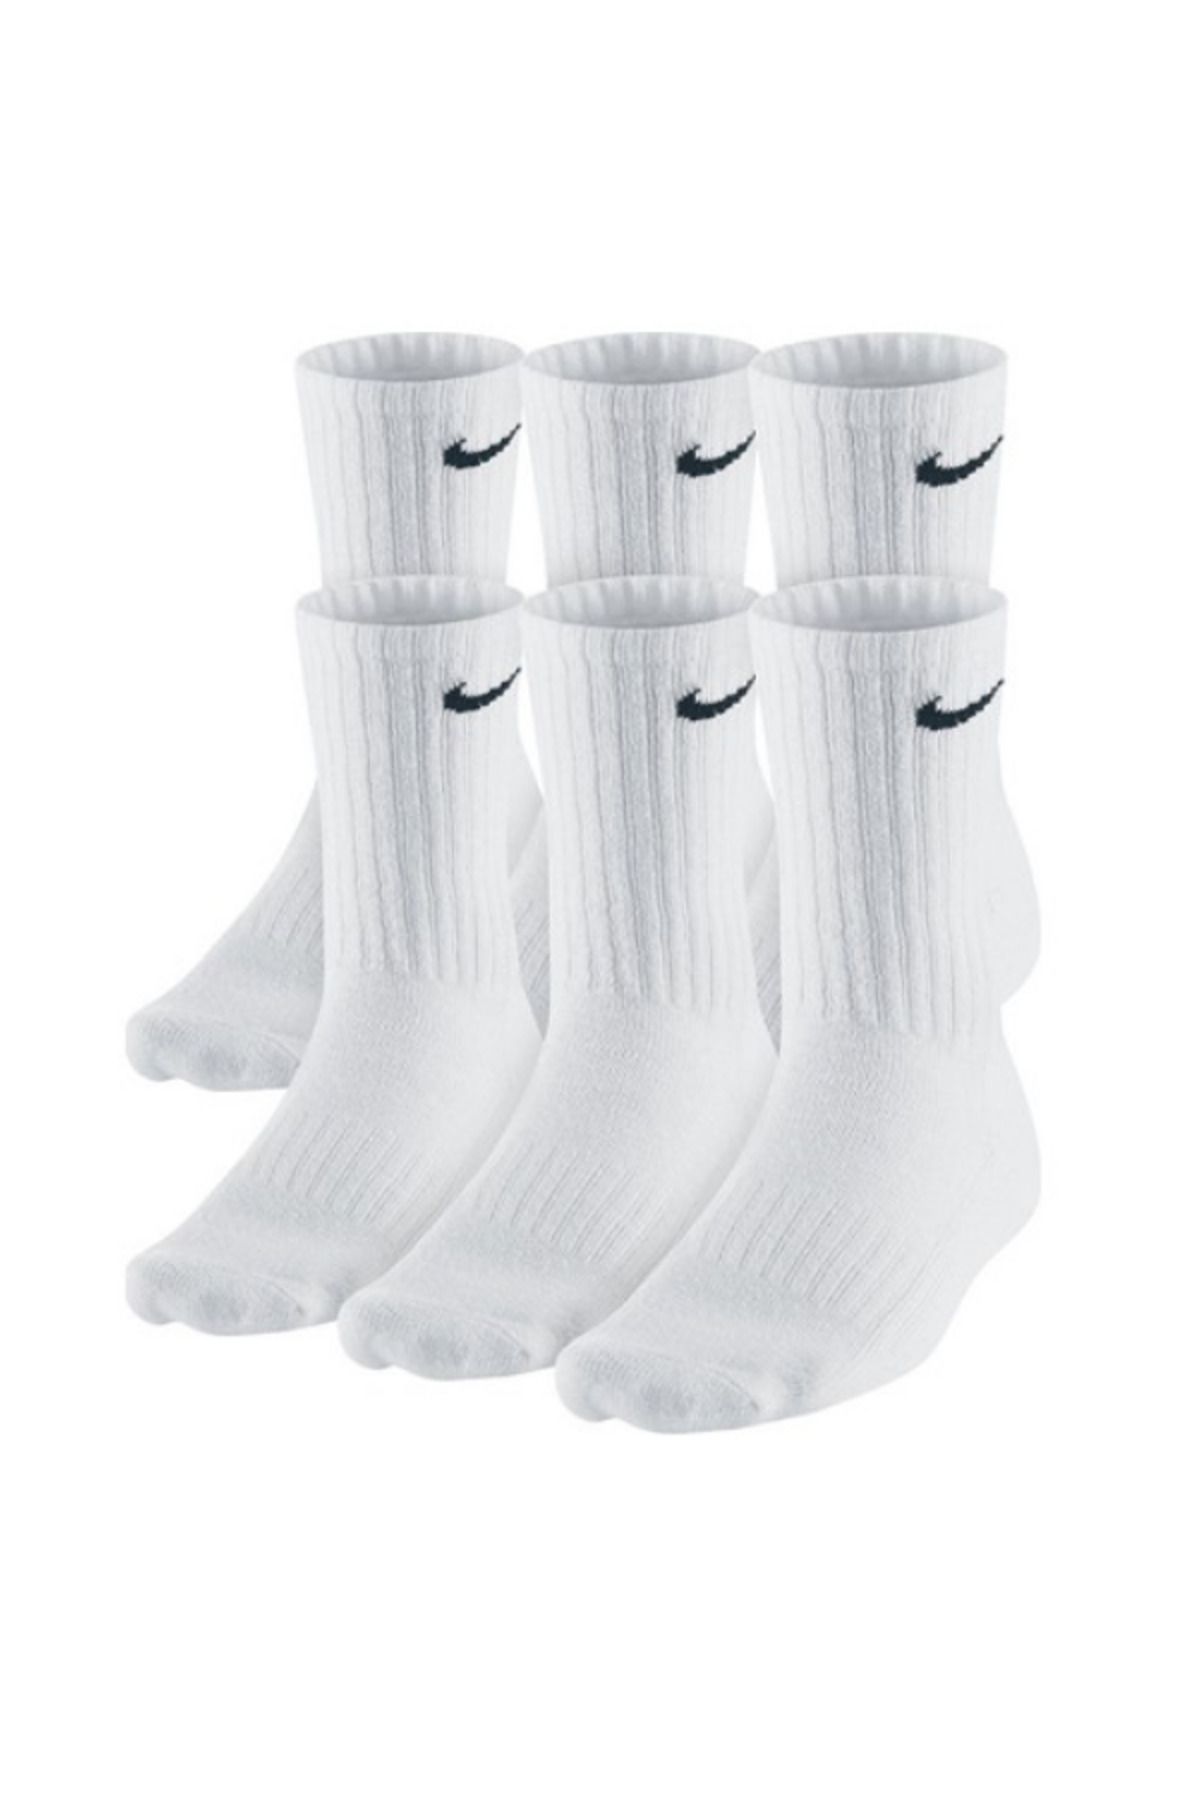 Socks Sirius 6'lı Penye Beyaz Antrenman Spor Tenis Futbol Basketbol Koşu Çorap Seti